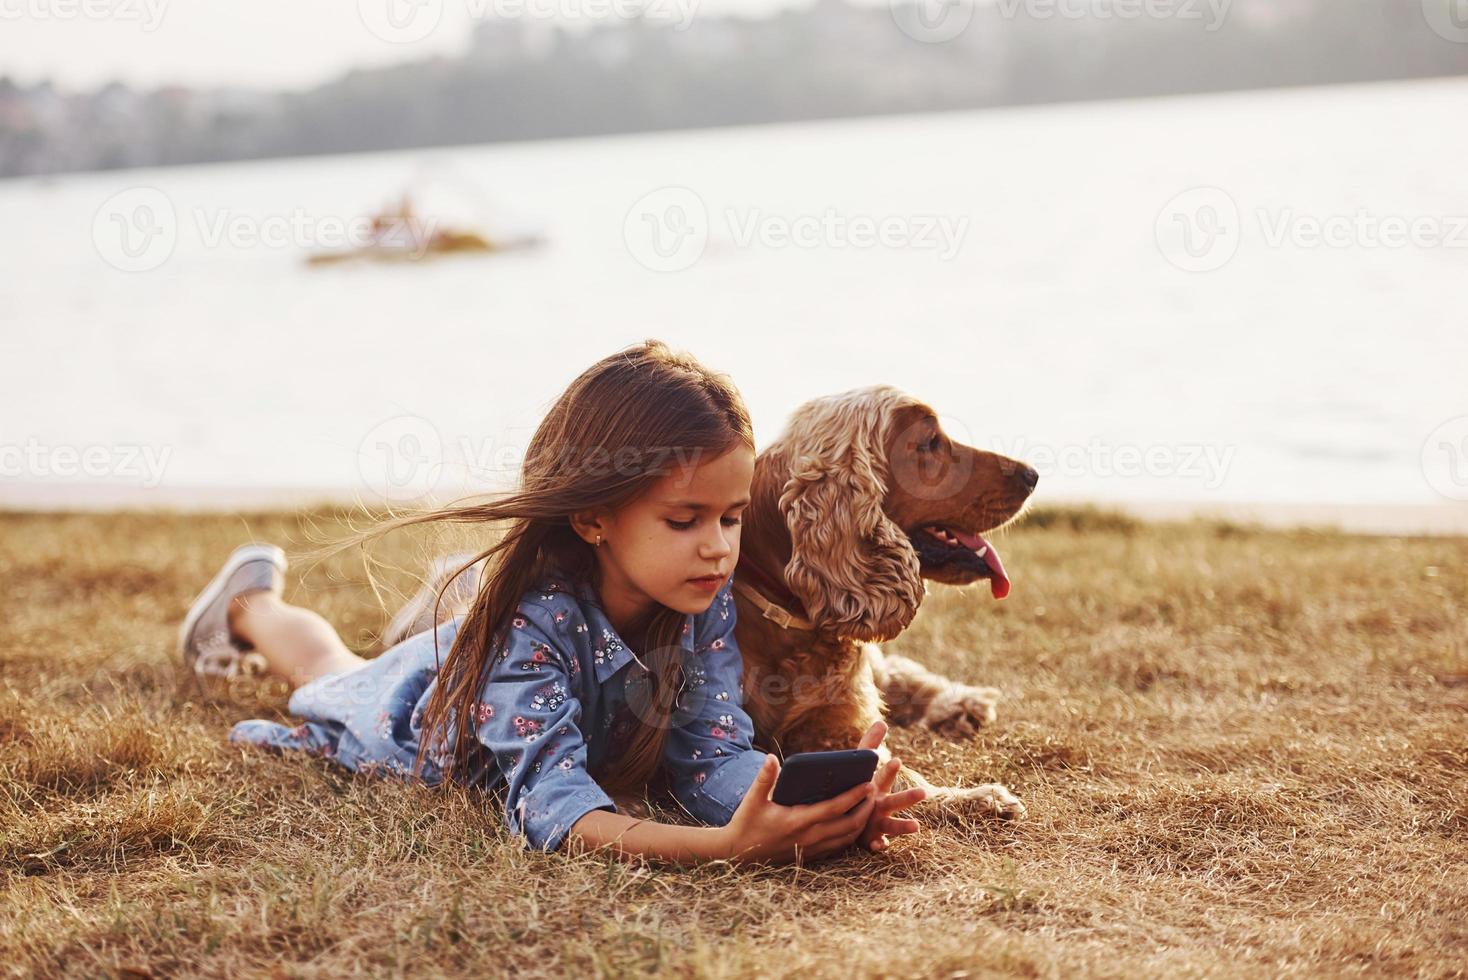 simning trasport behing på de sjö. söt liten flicka ha en promenad med henne hund utomhus på solig dag foto